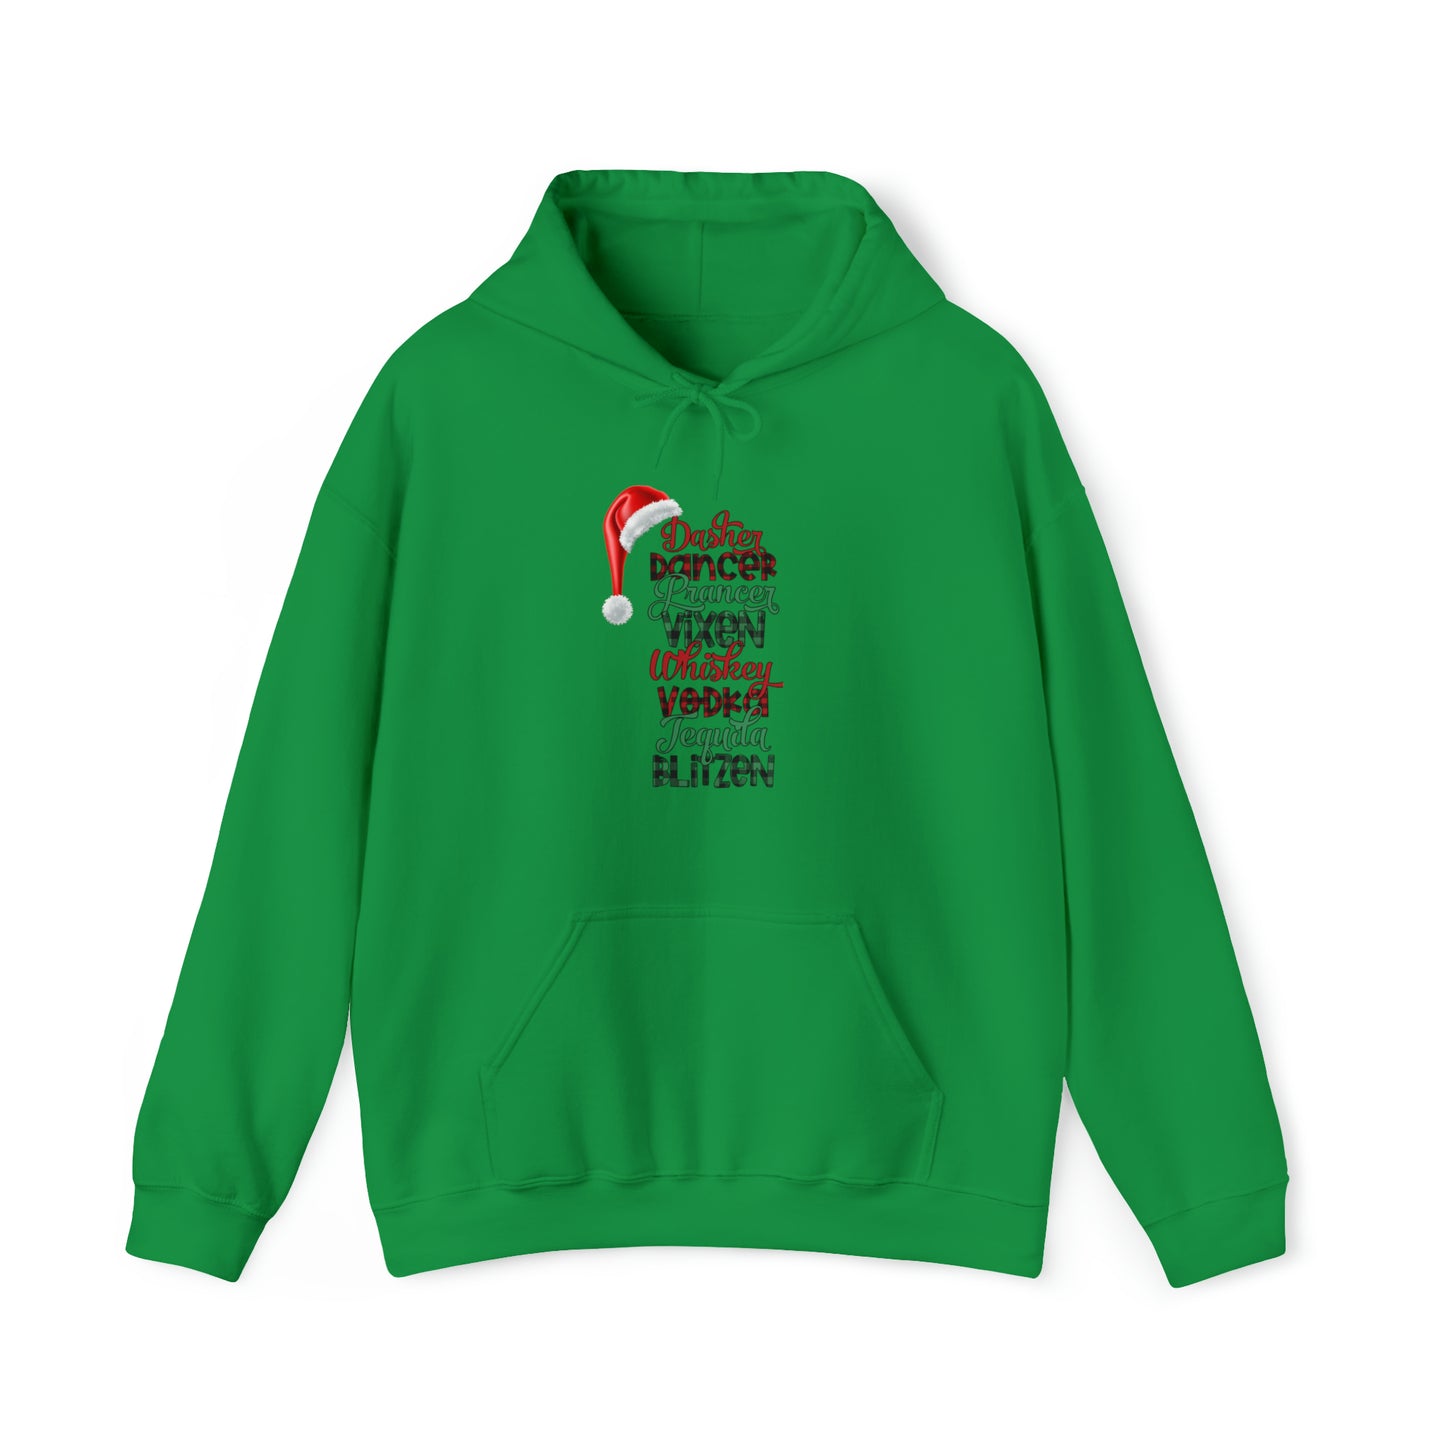 Reindeer Games Unisex Heavy Blend™ Hooded Sweatshirt